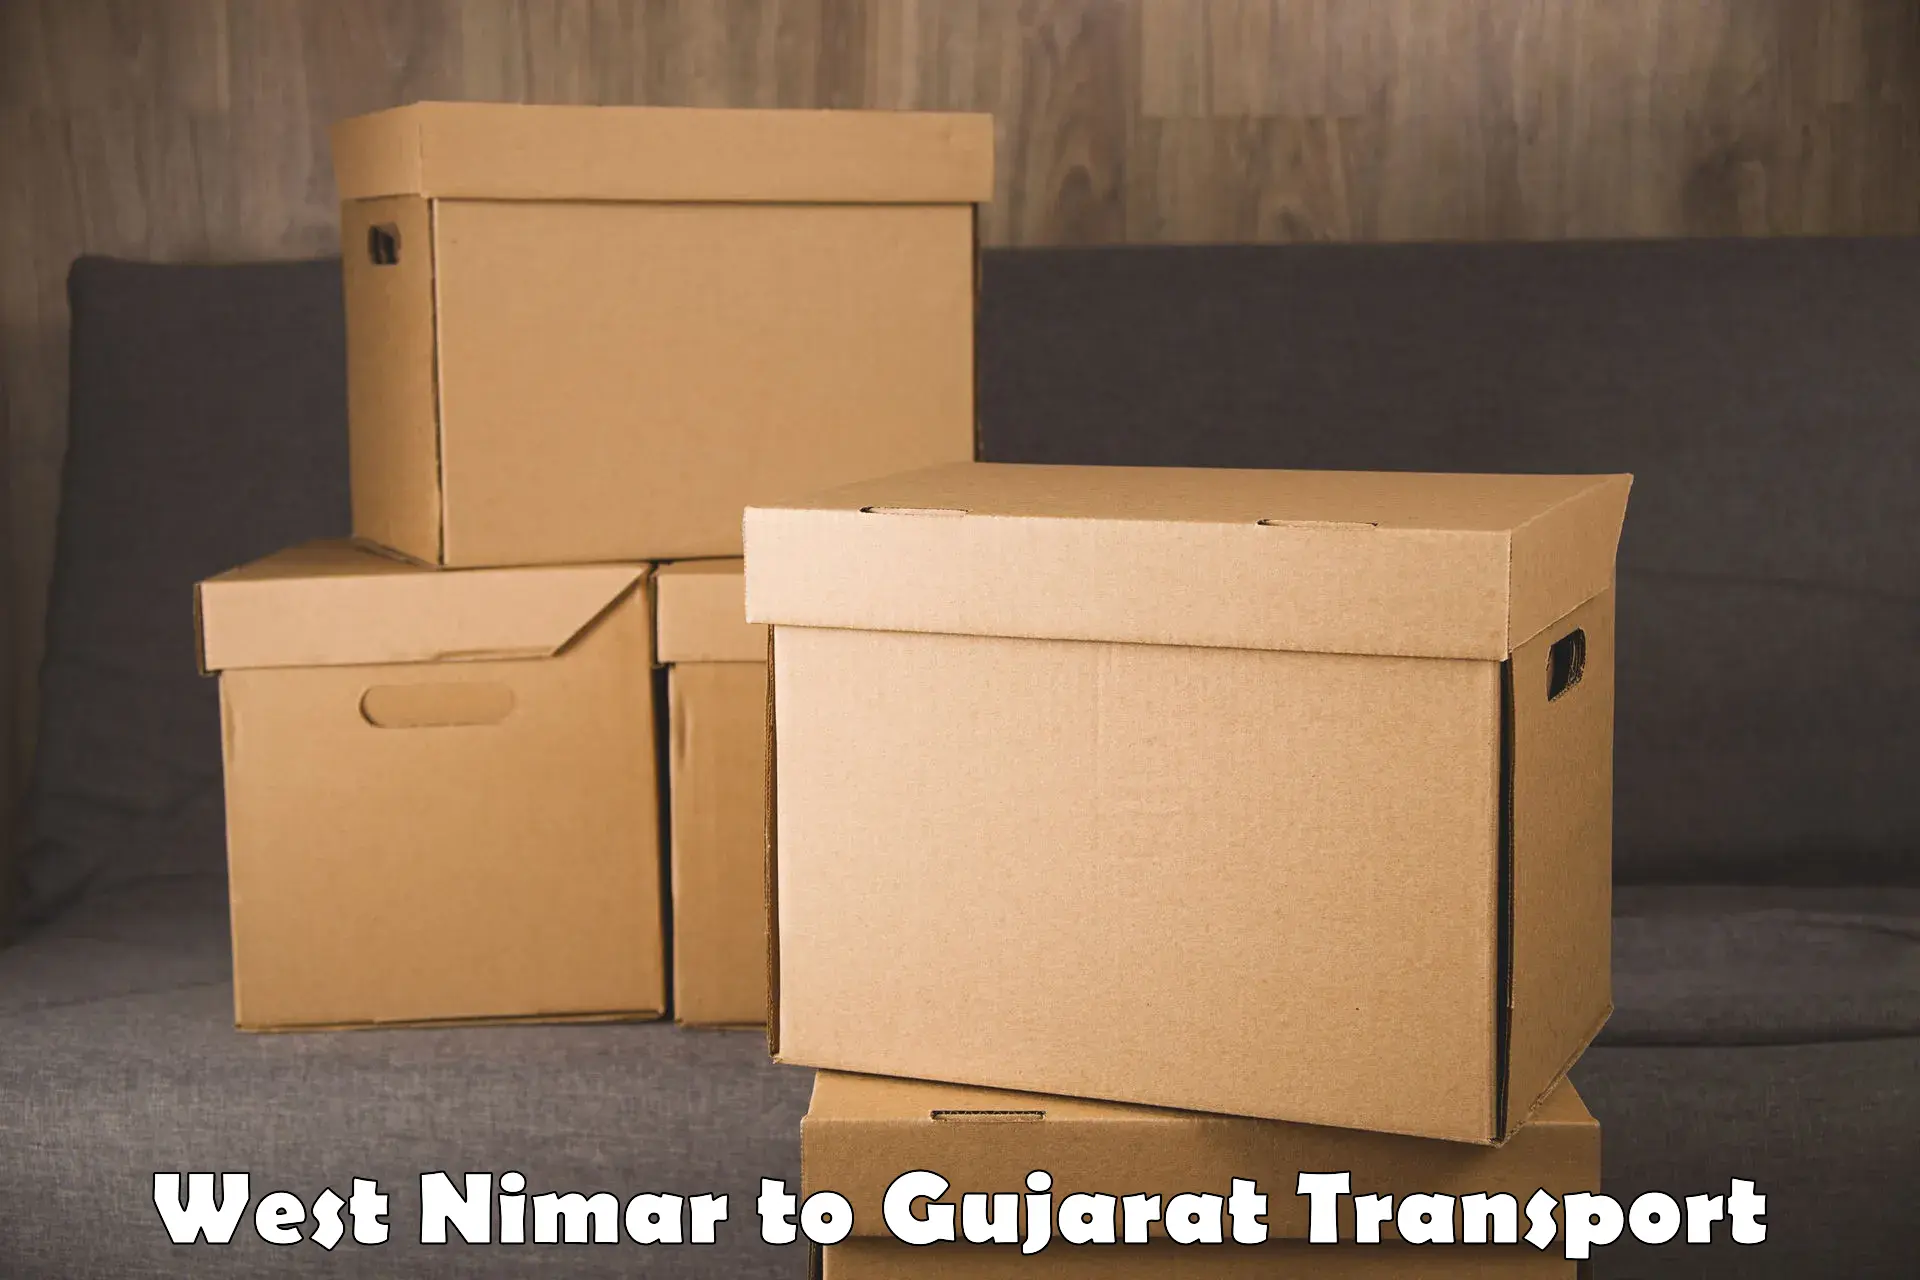 Furniture transport service West Nimar to Bhavnagar